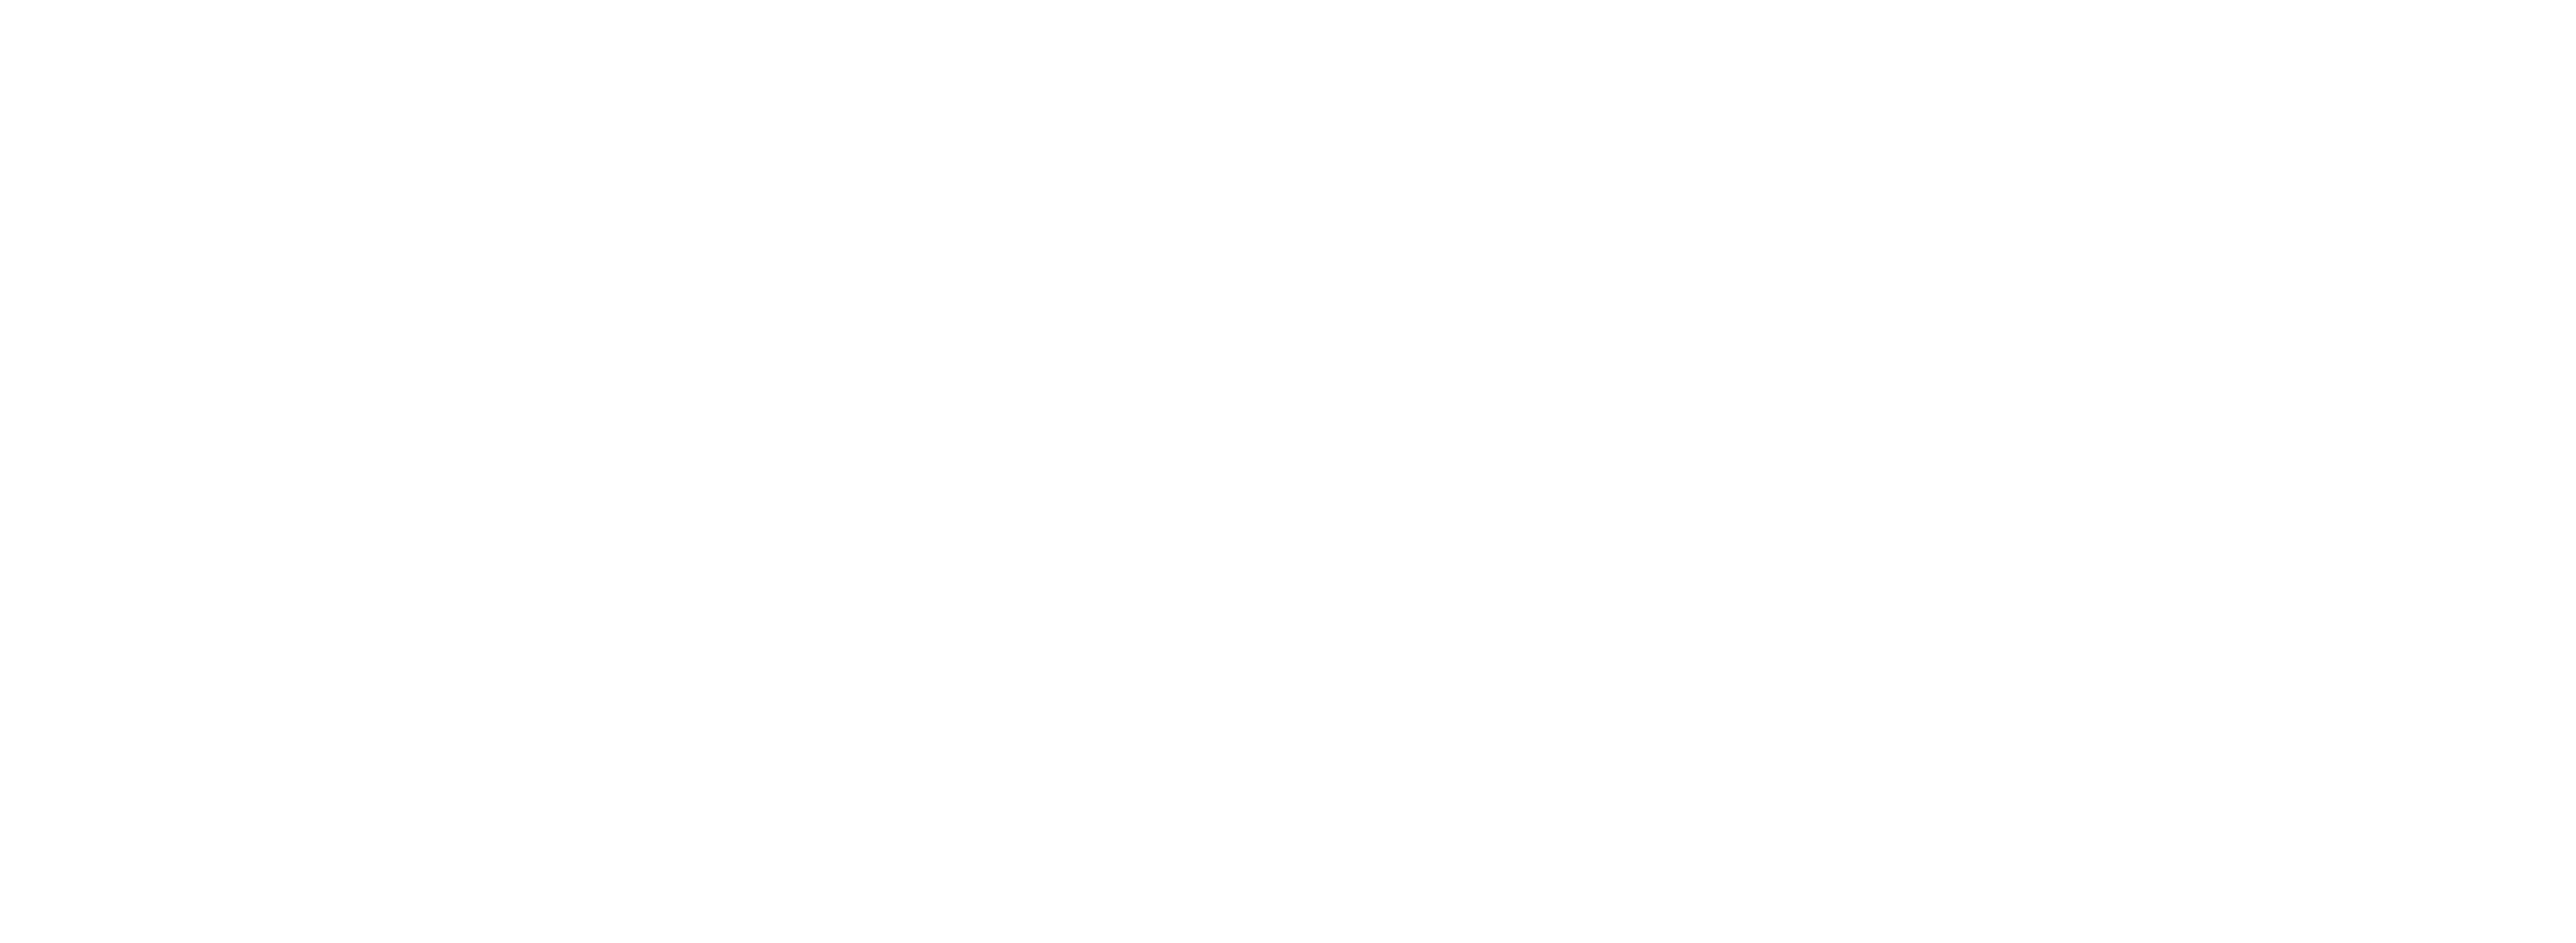 Suzuka Hashimoto